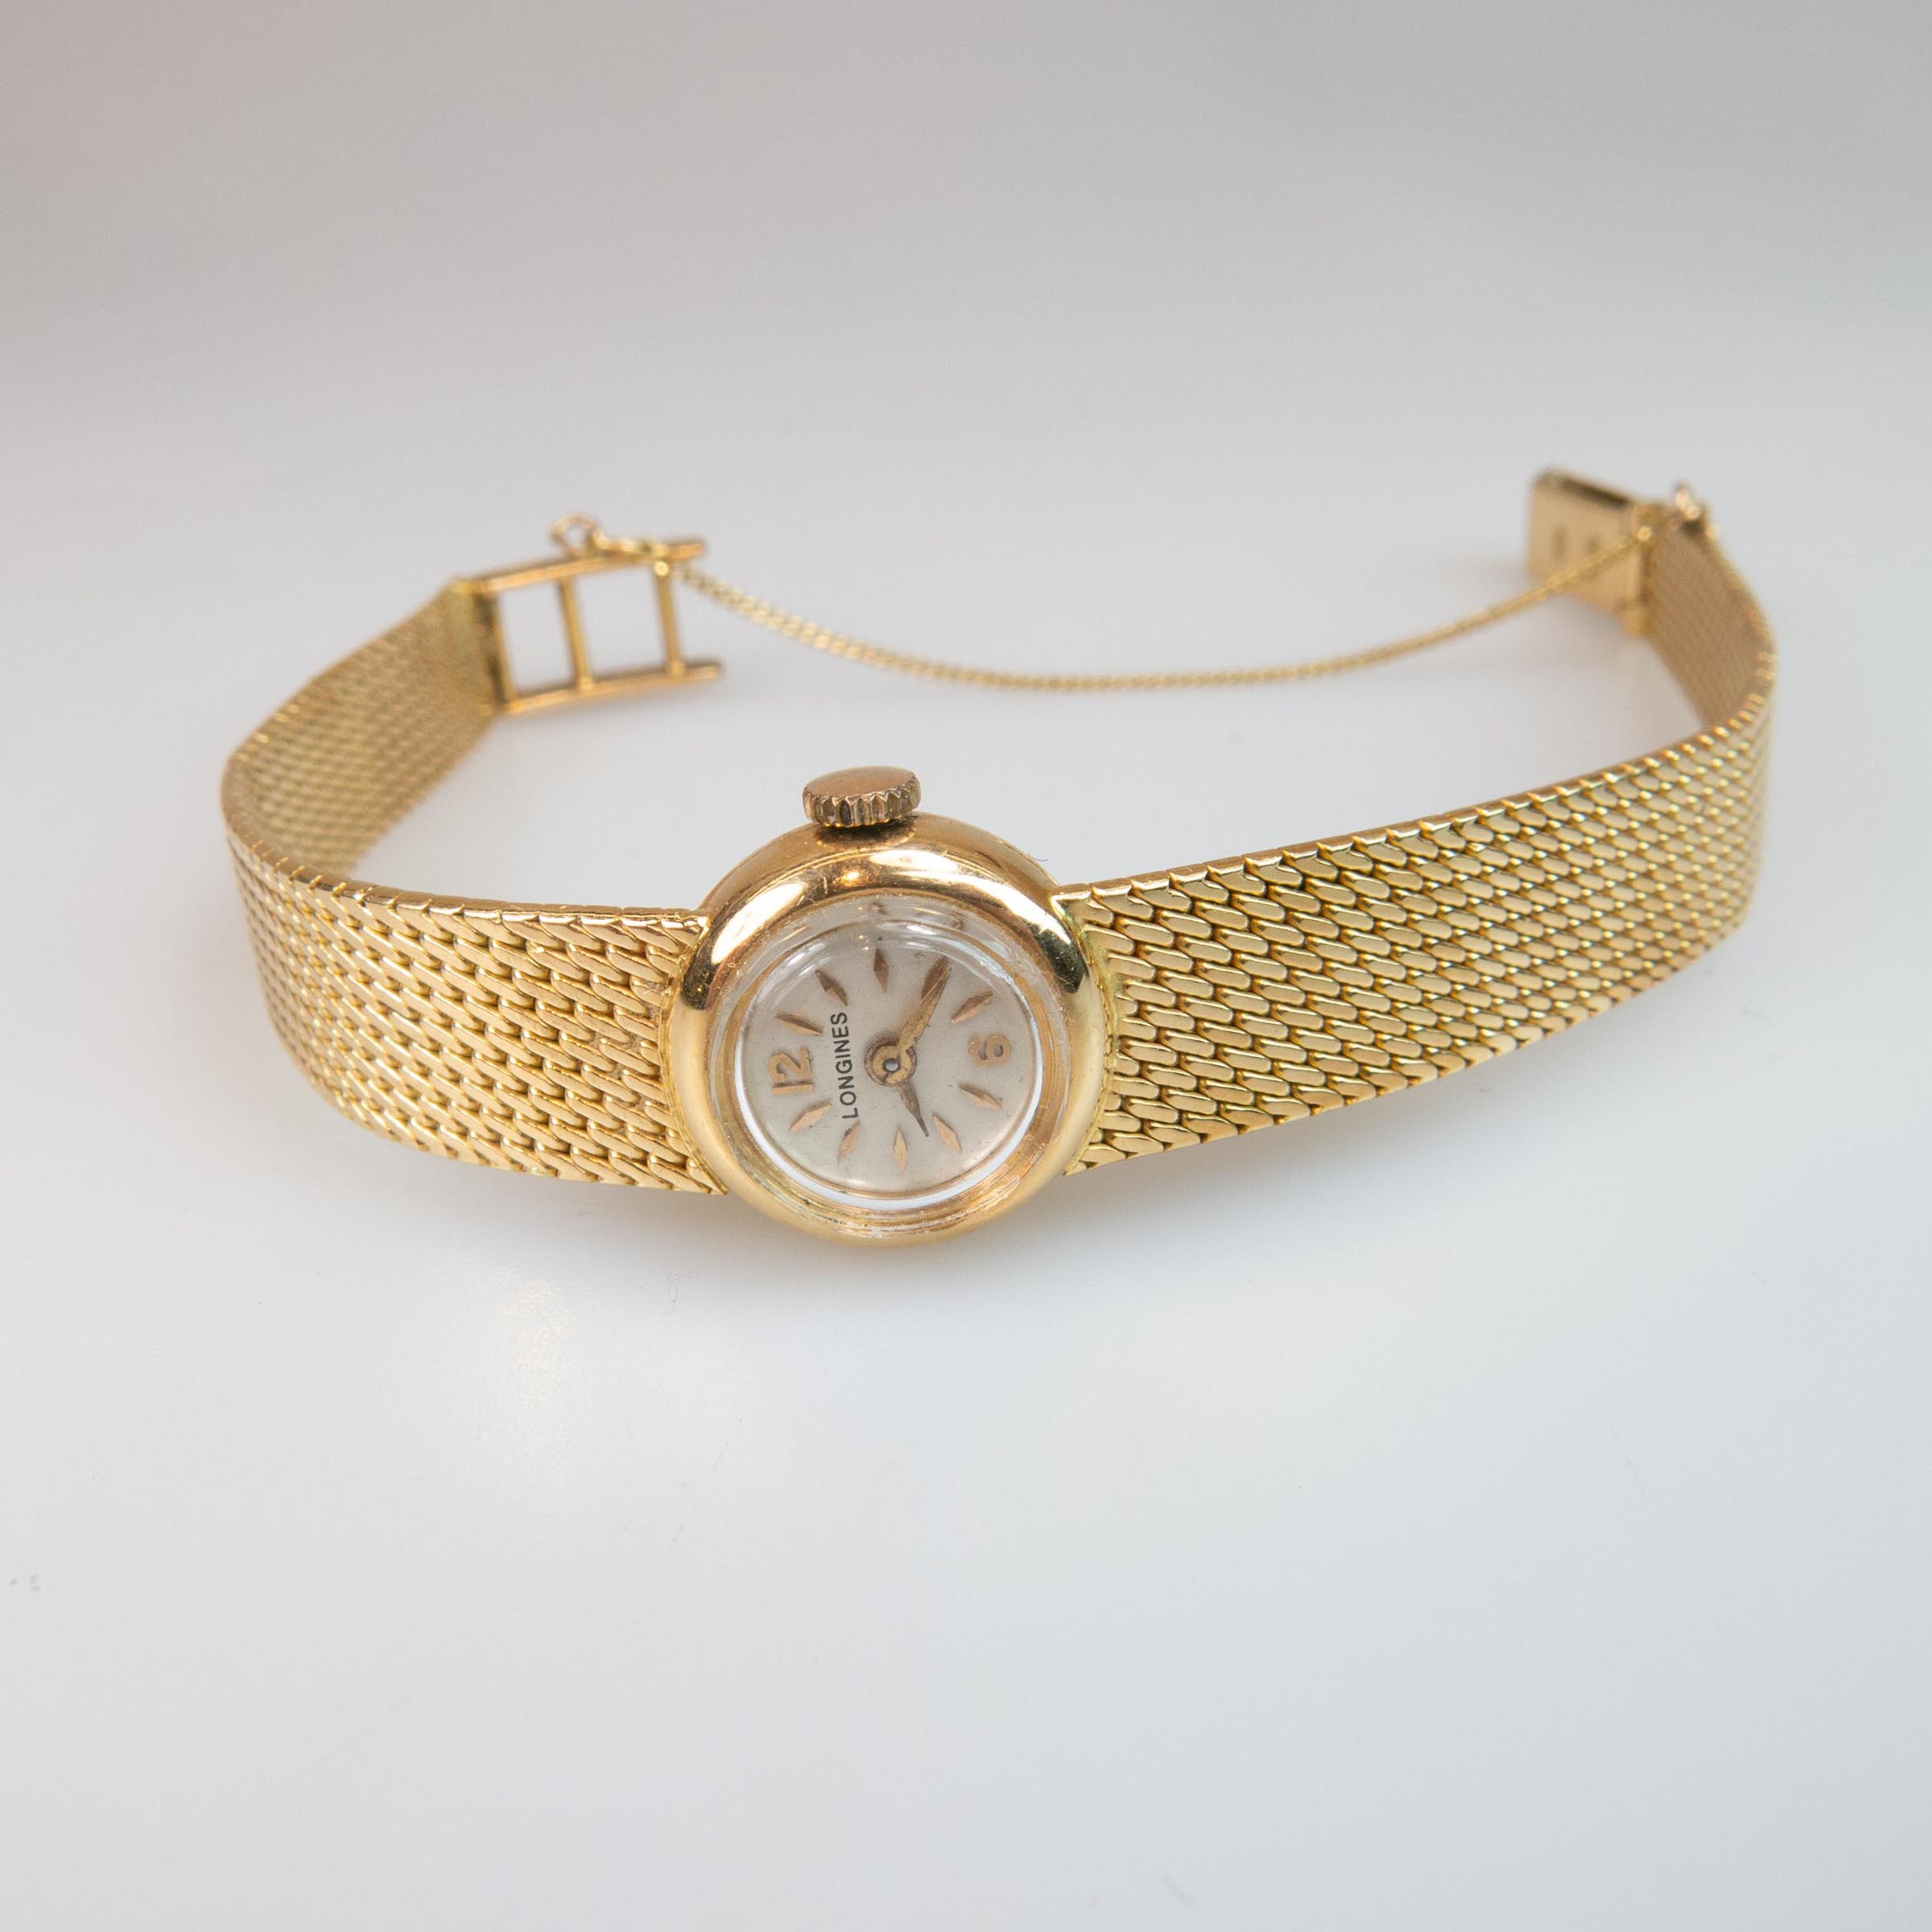 Lady's Longines Wristwatch